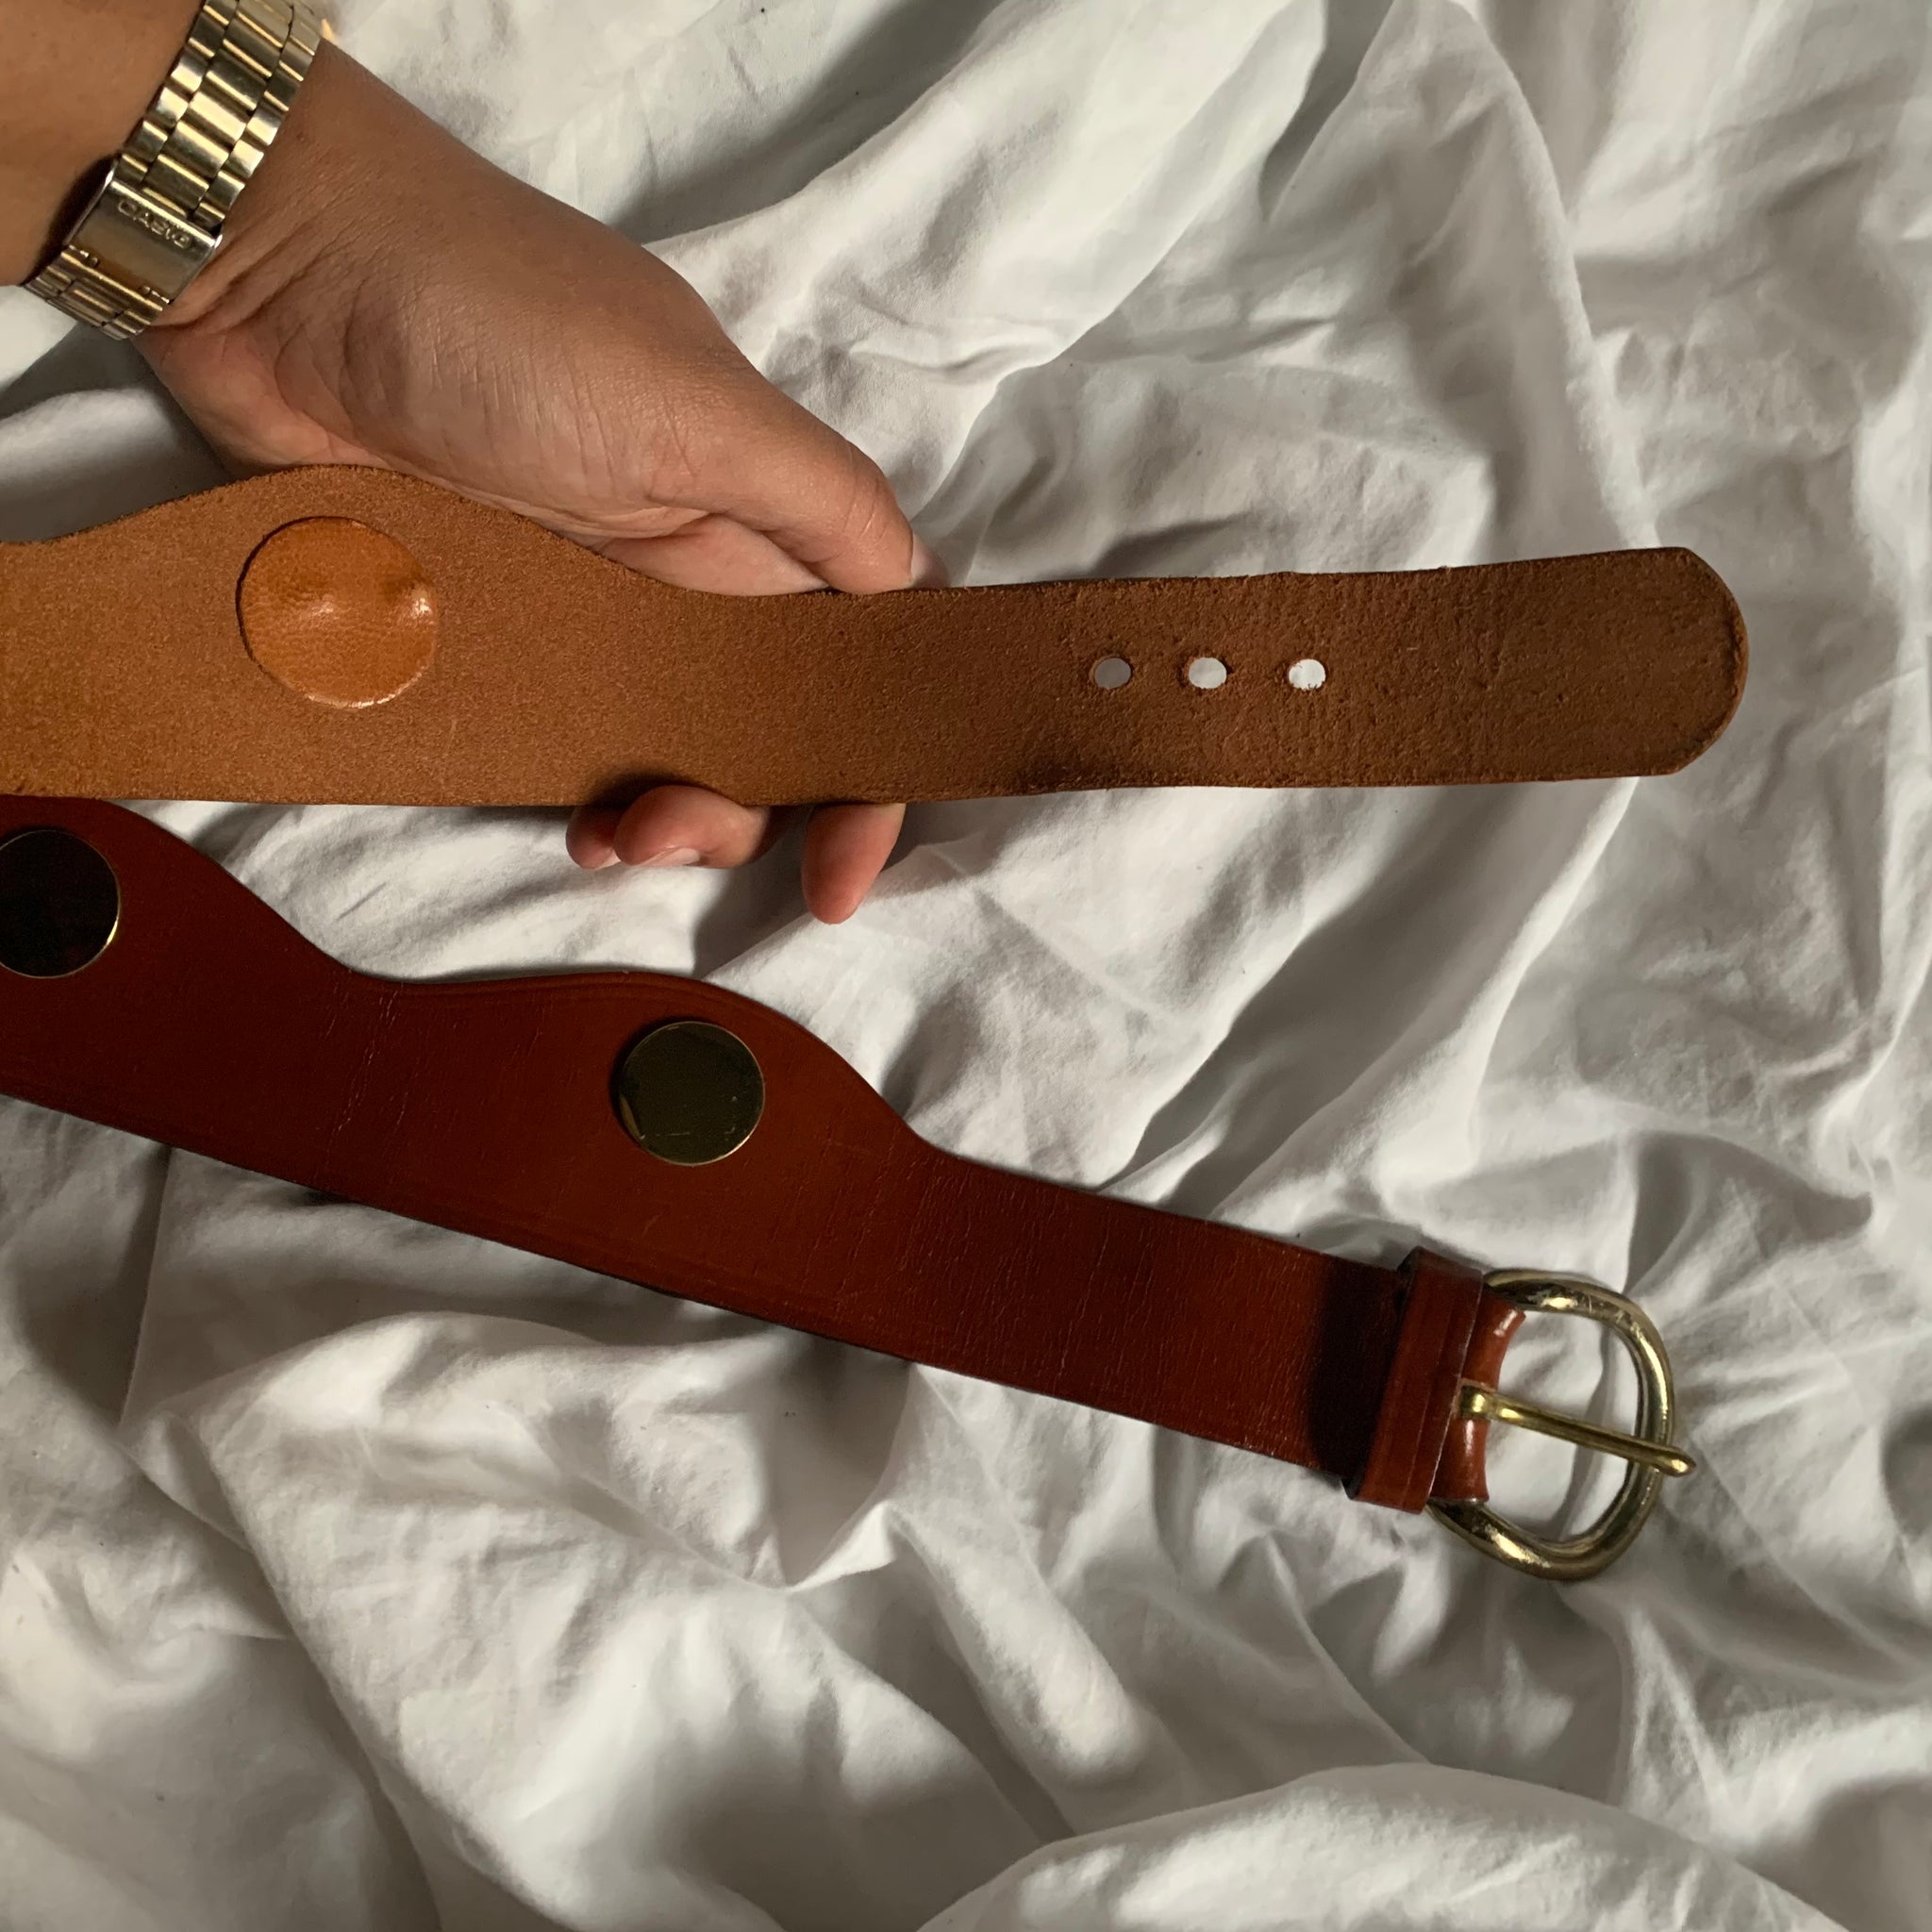 Vintage Genuine Brown Leather Scalloped Gold Disk Belt (M)